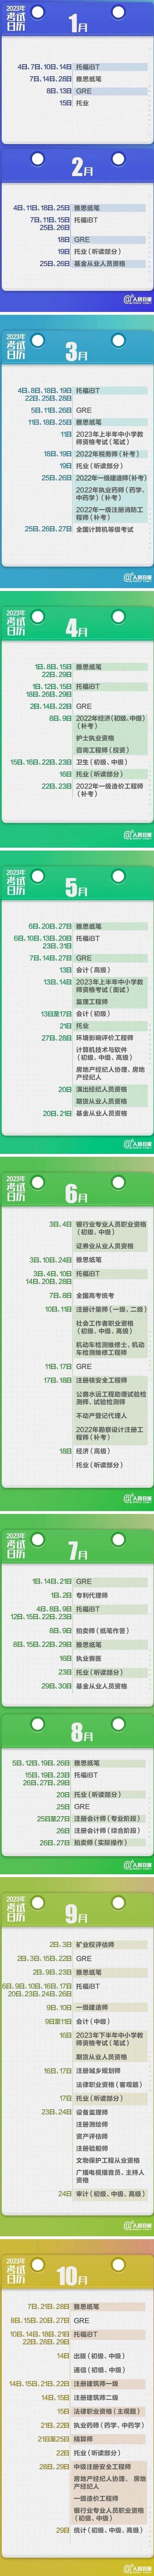 浙江教育考试院官网登录入口（附2023年全年考试计划）